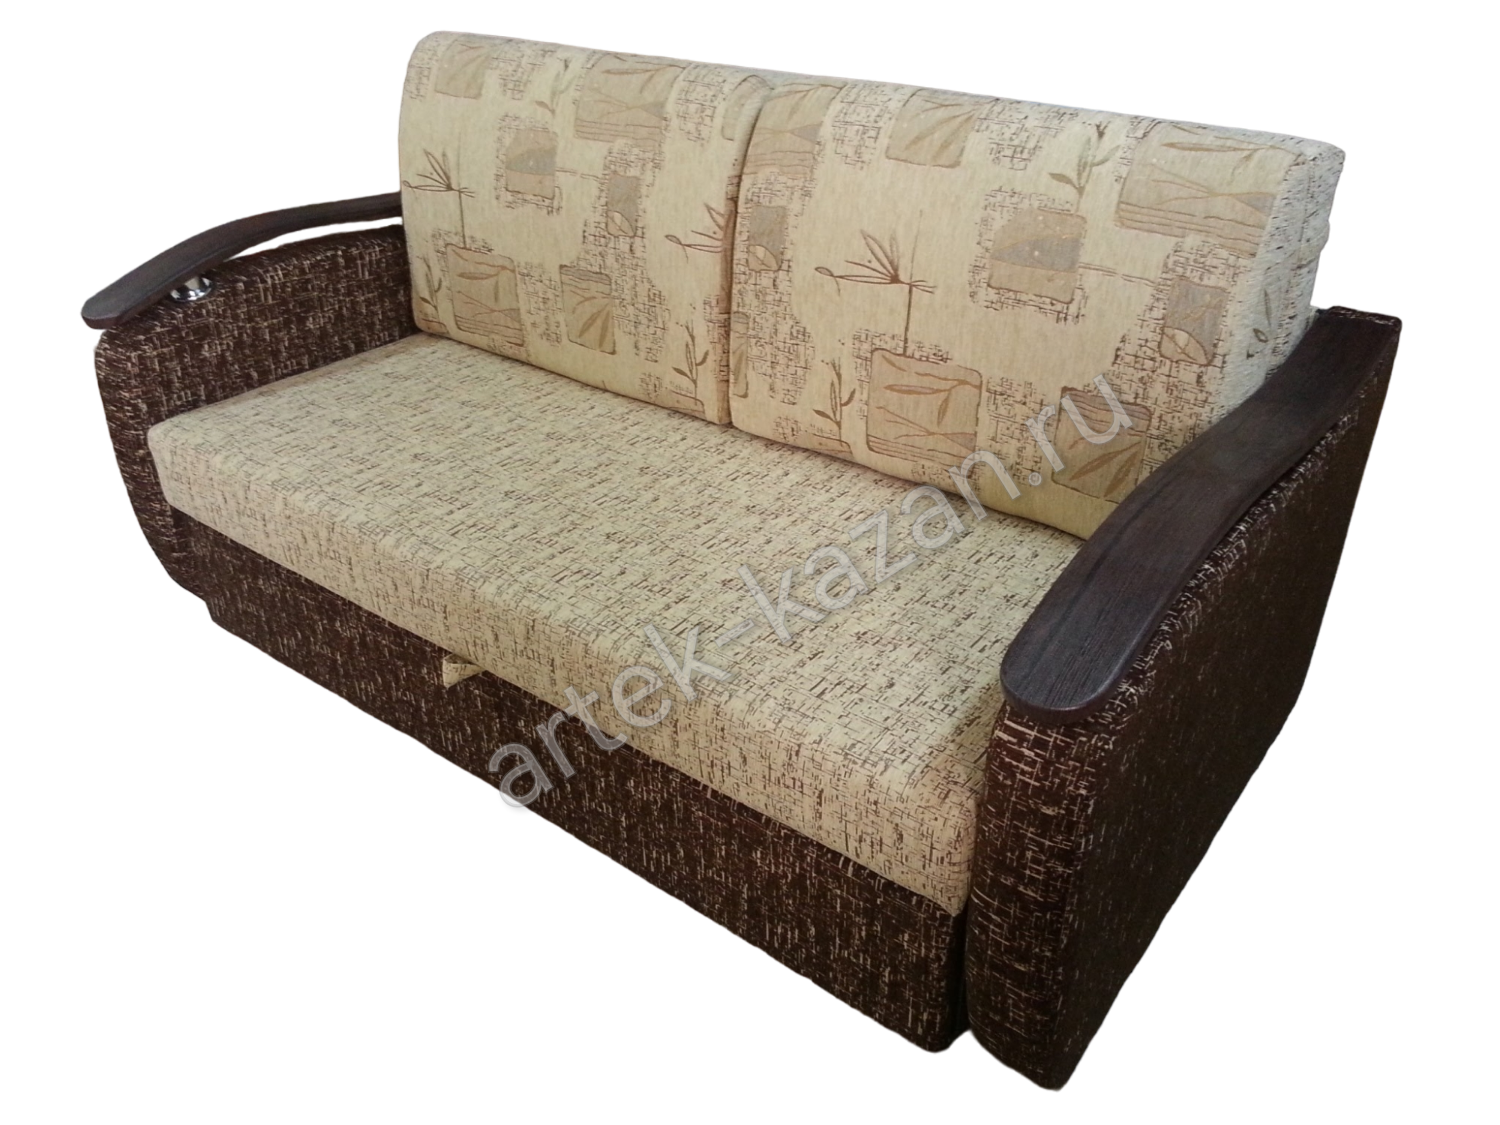 Мини диван на выкатном механизме Миник фото № 4. Купить недорогой диван по низкой цене от производителя можно у нас.